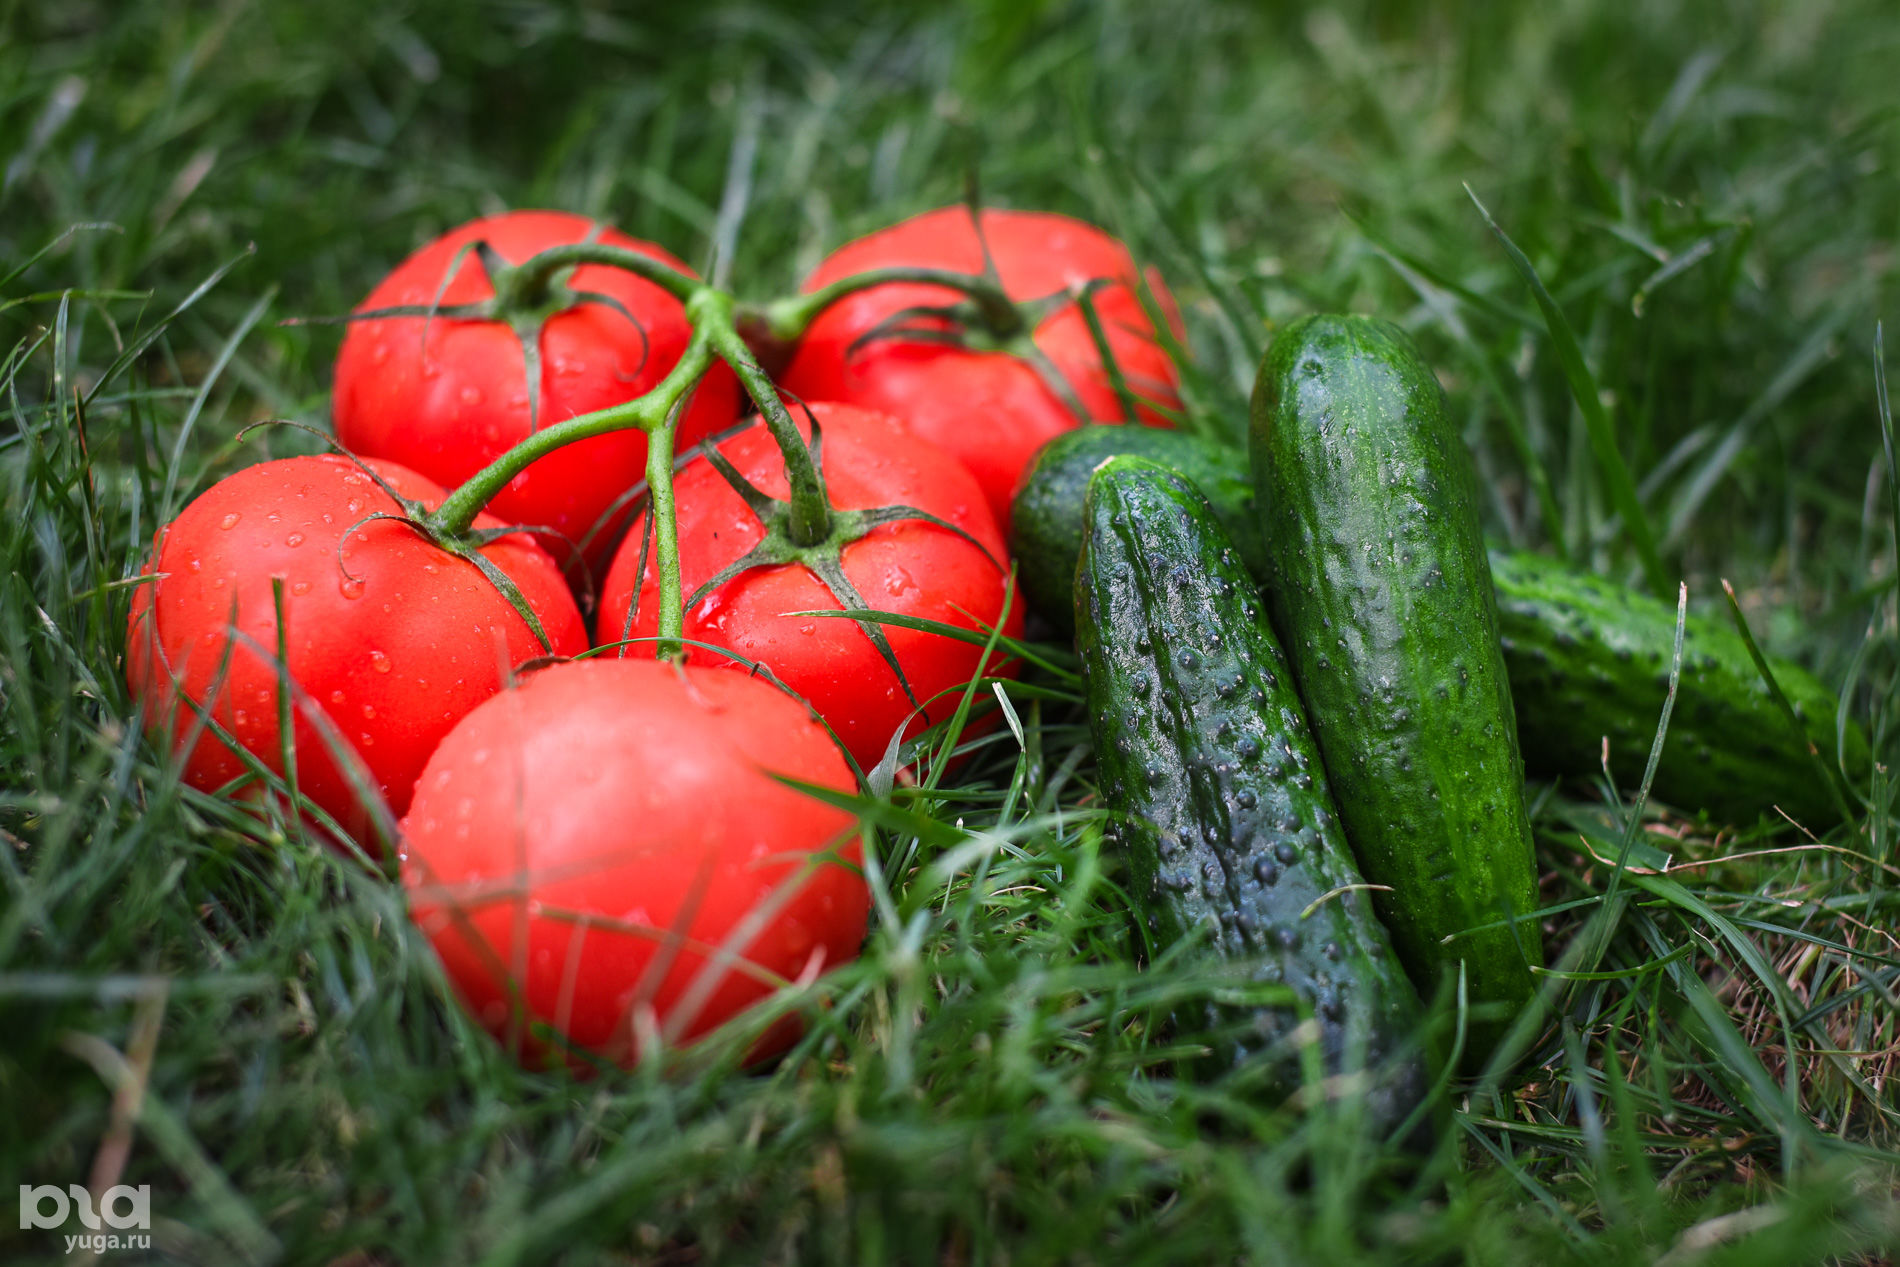 Огурцы (35,55 р. за 1 кг) и помидоры (149 р. за 1 кг) © Елена Синеок, Юга.ру